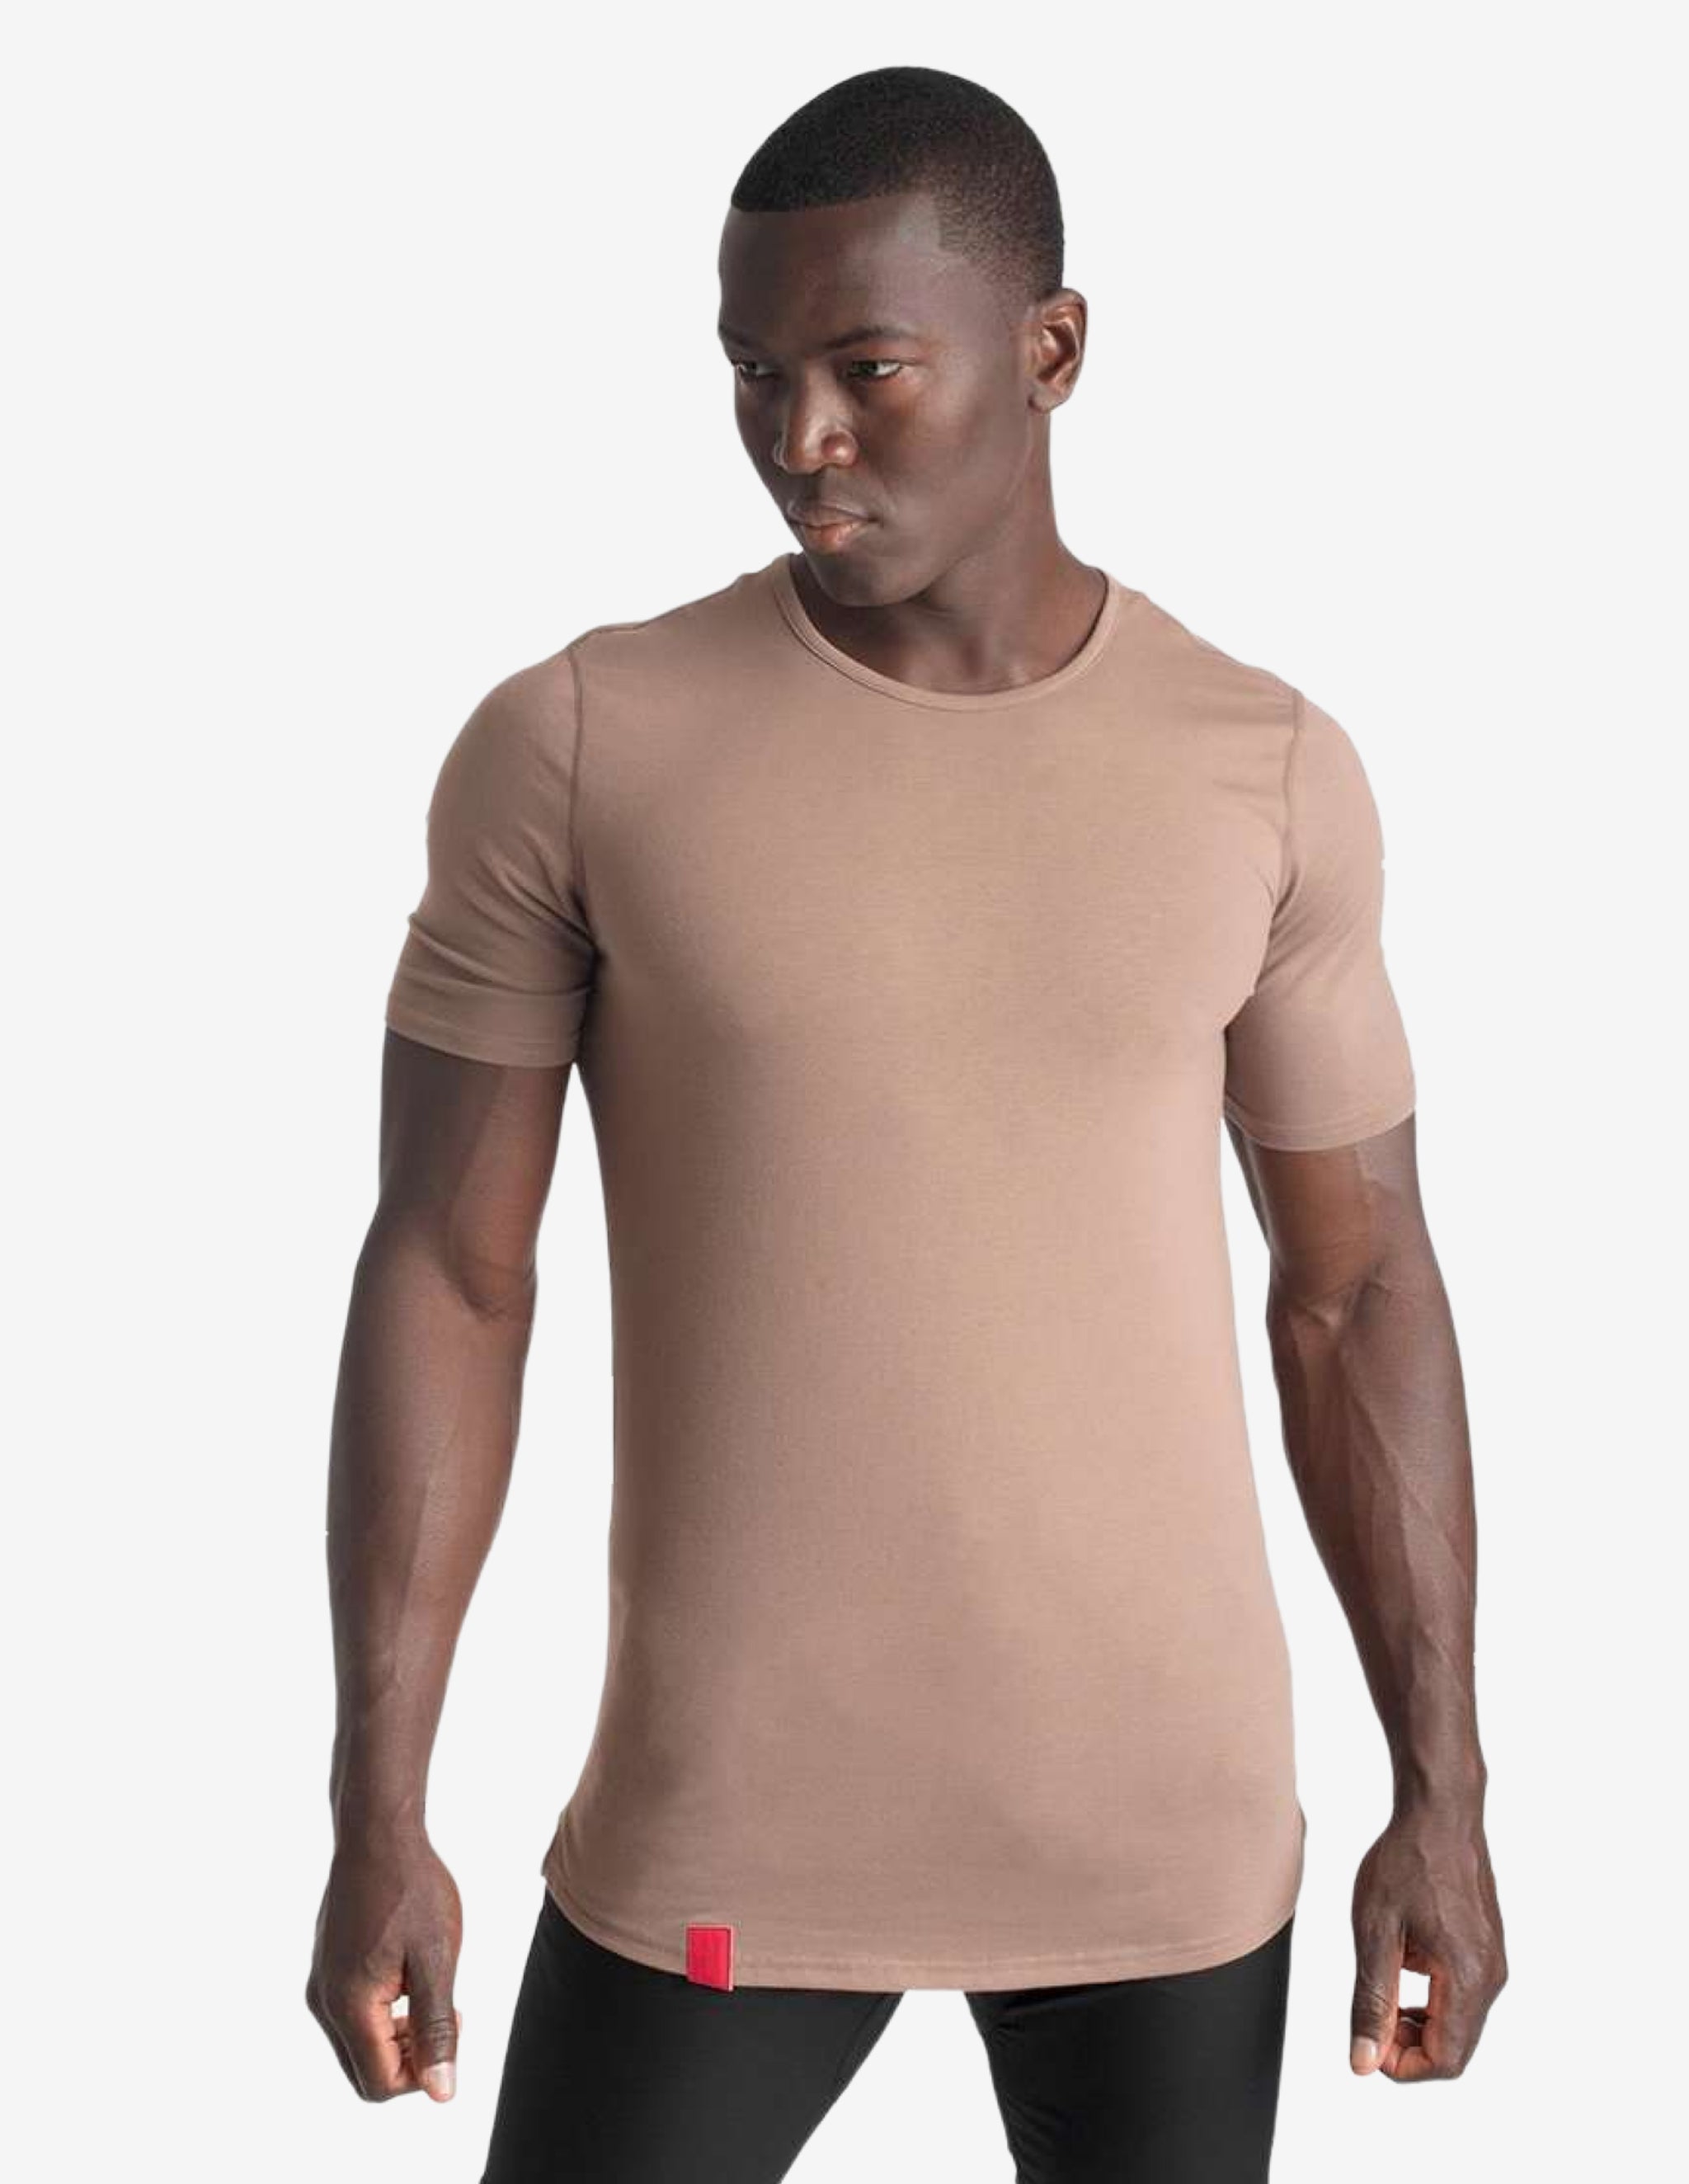 Cardinal V2 Scoop Tee - Pale Brown-T-shirt Man-Biink Athleisure-Guru Muscle